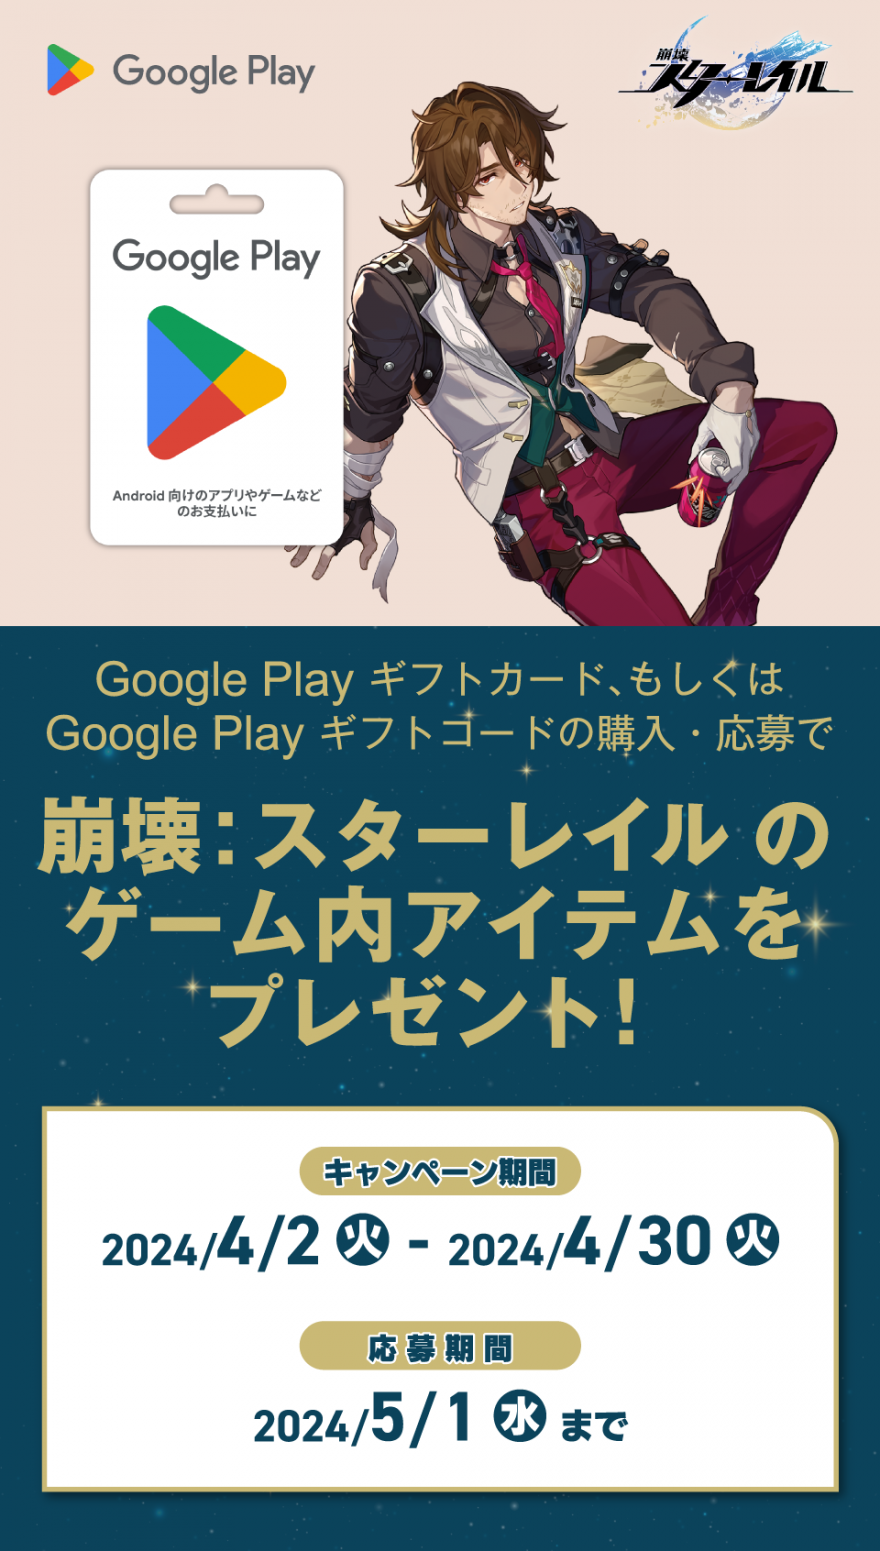 Google Play 商品｜崩壊 : スターレイル のゲーム内アイテムプレゼントキャンペーン！お知らせ